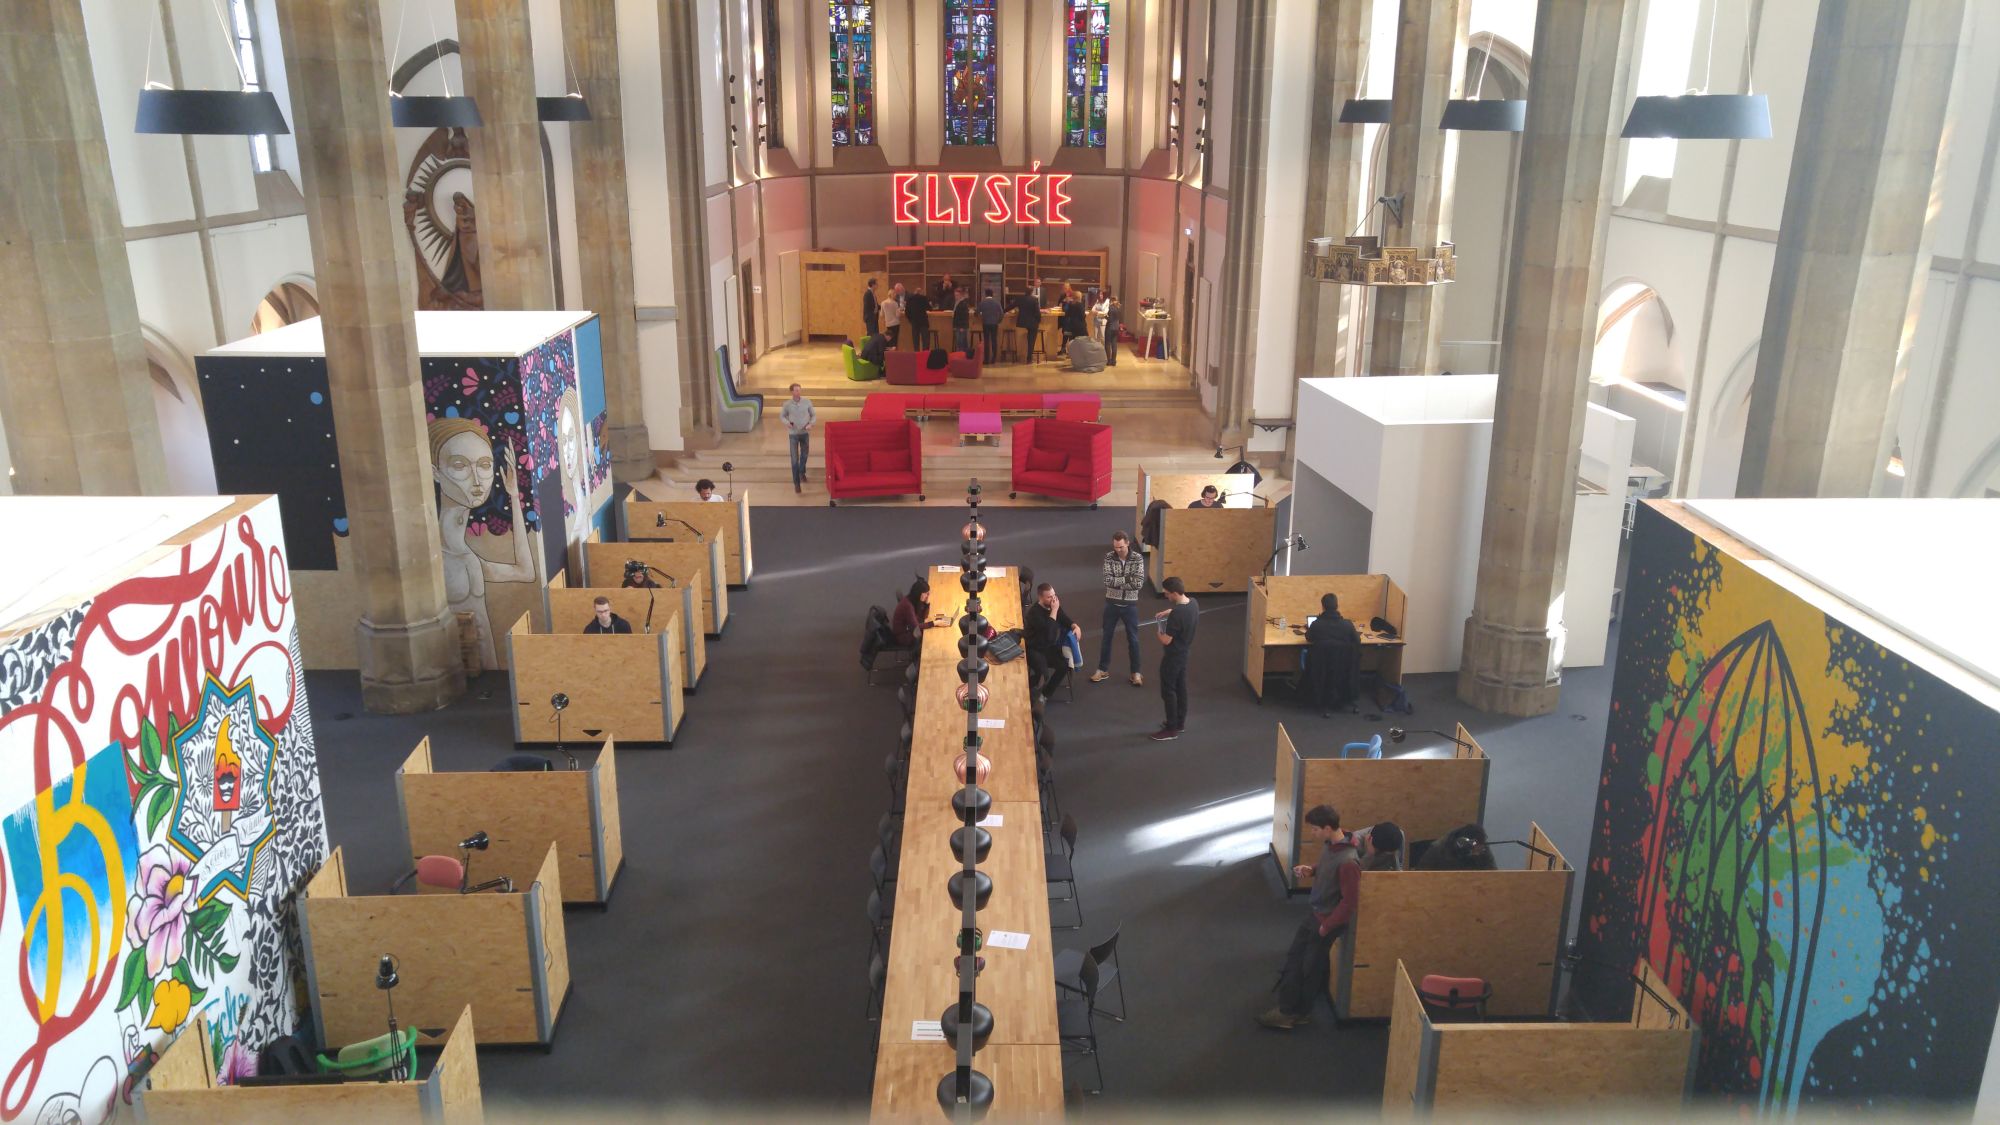 Das besondere Umfeld der ehemaligen Kirche empfinden viele der Nutzer als inspirierend. (c) Verein digital Hub Aachen